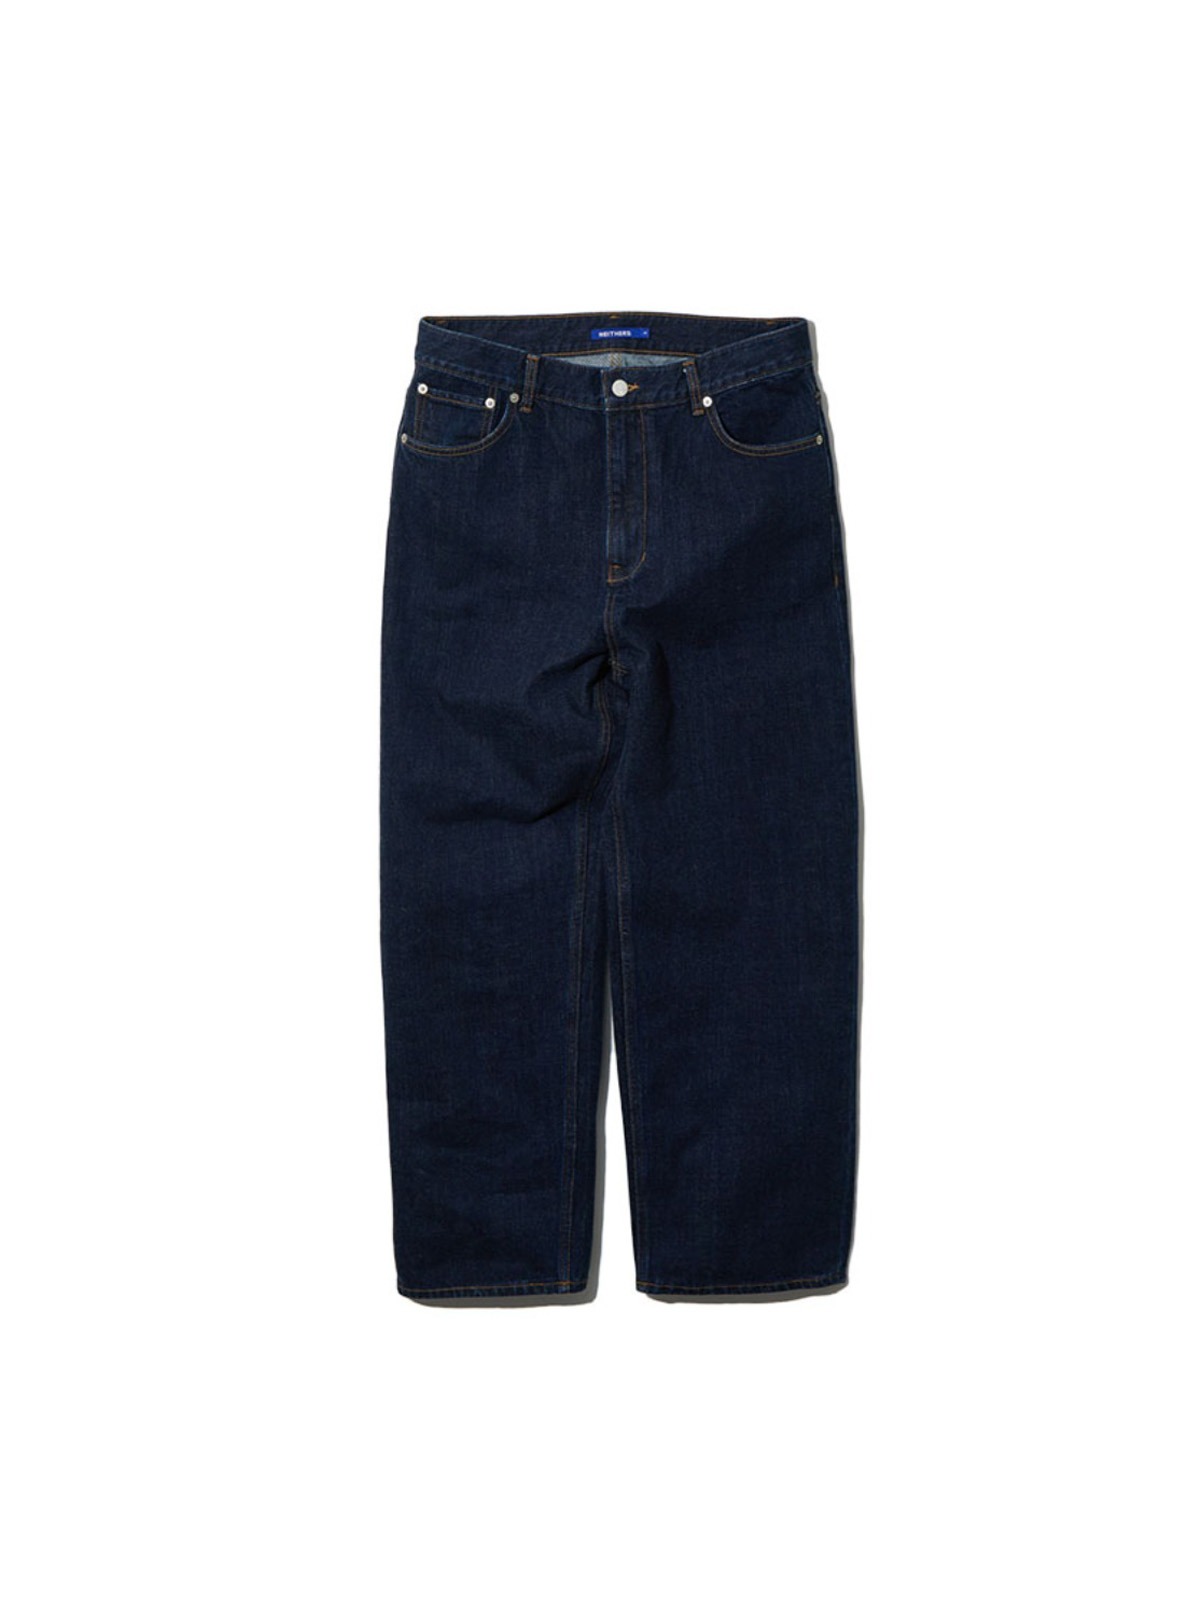 5-Pocket Kuroki Denim Pants (Indigo)